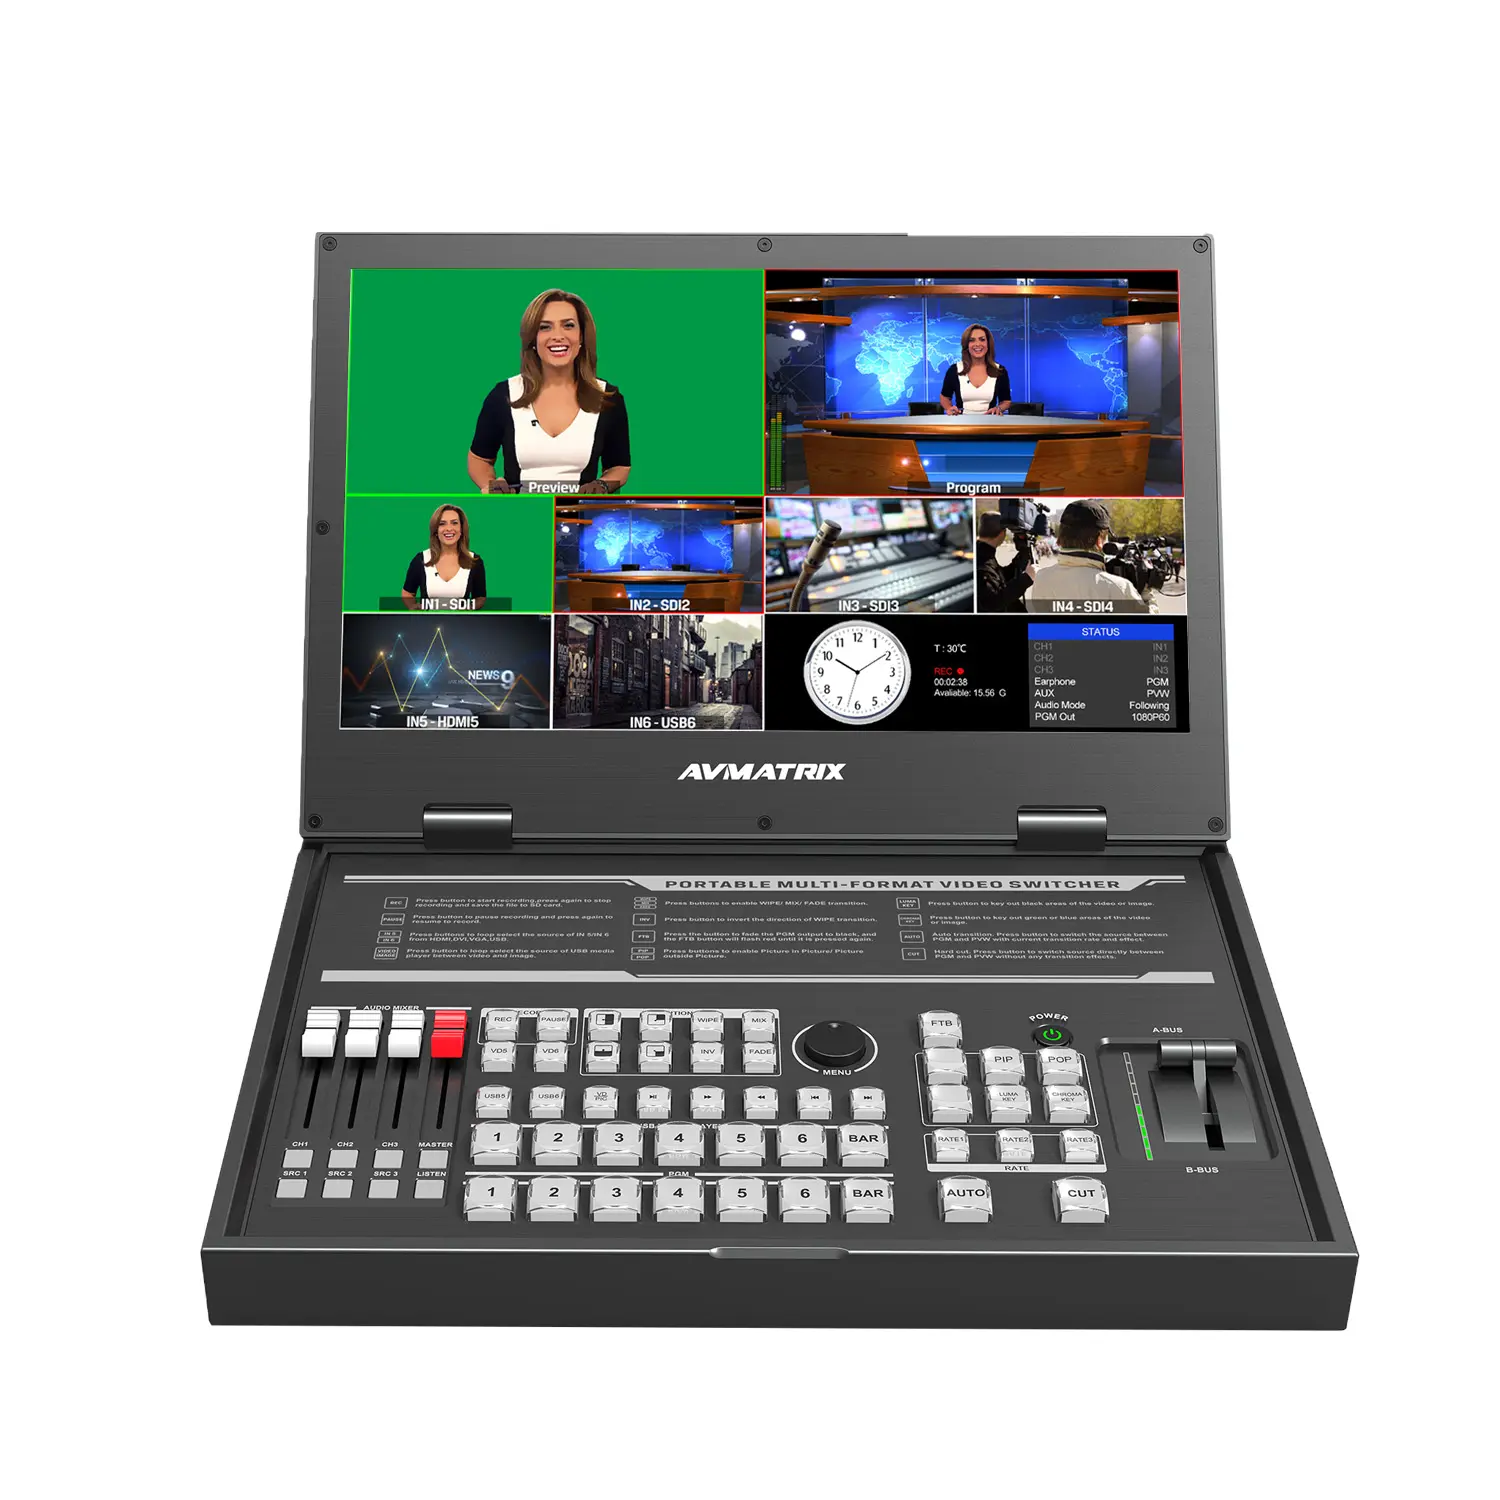 PVS0615U Avmatrix Live streaming trasmissione video switcher macchina All-in-One per Radio e TV apparecchiature di trasmissione chiese matrimoni